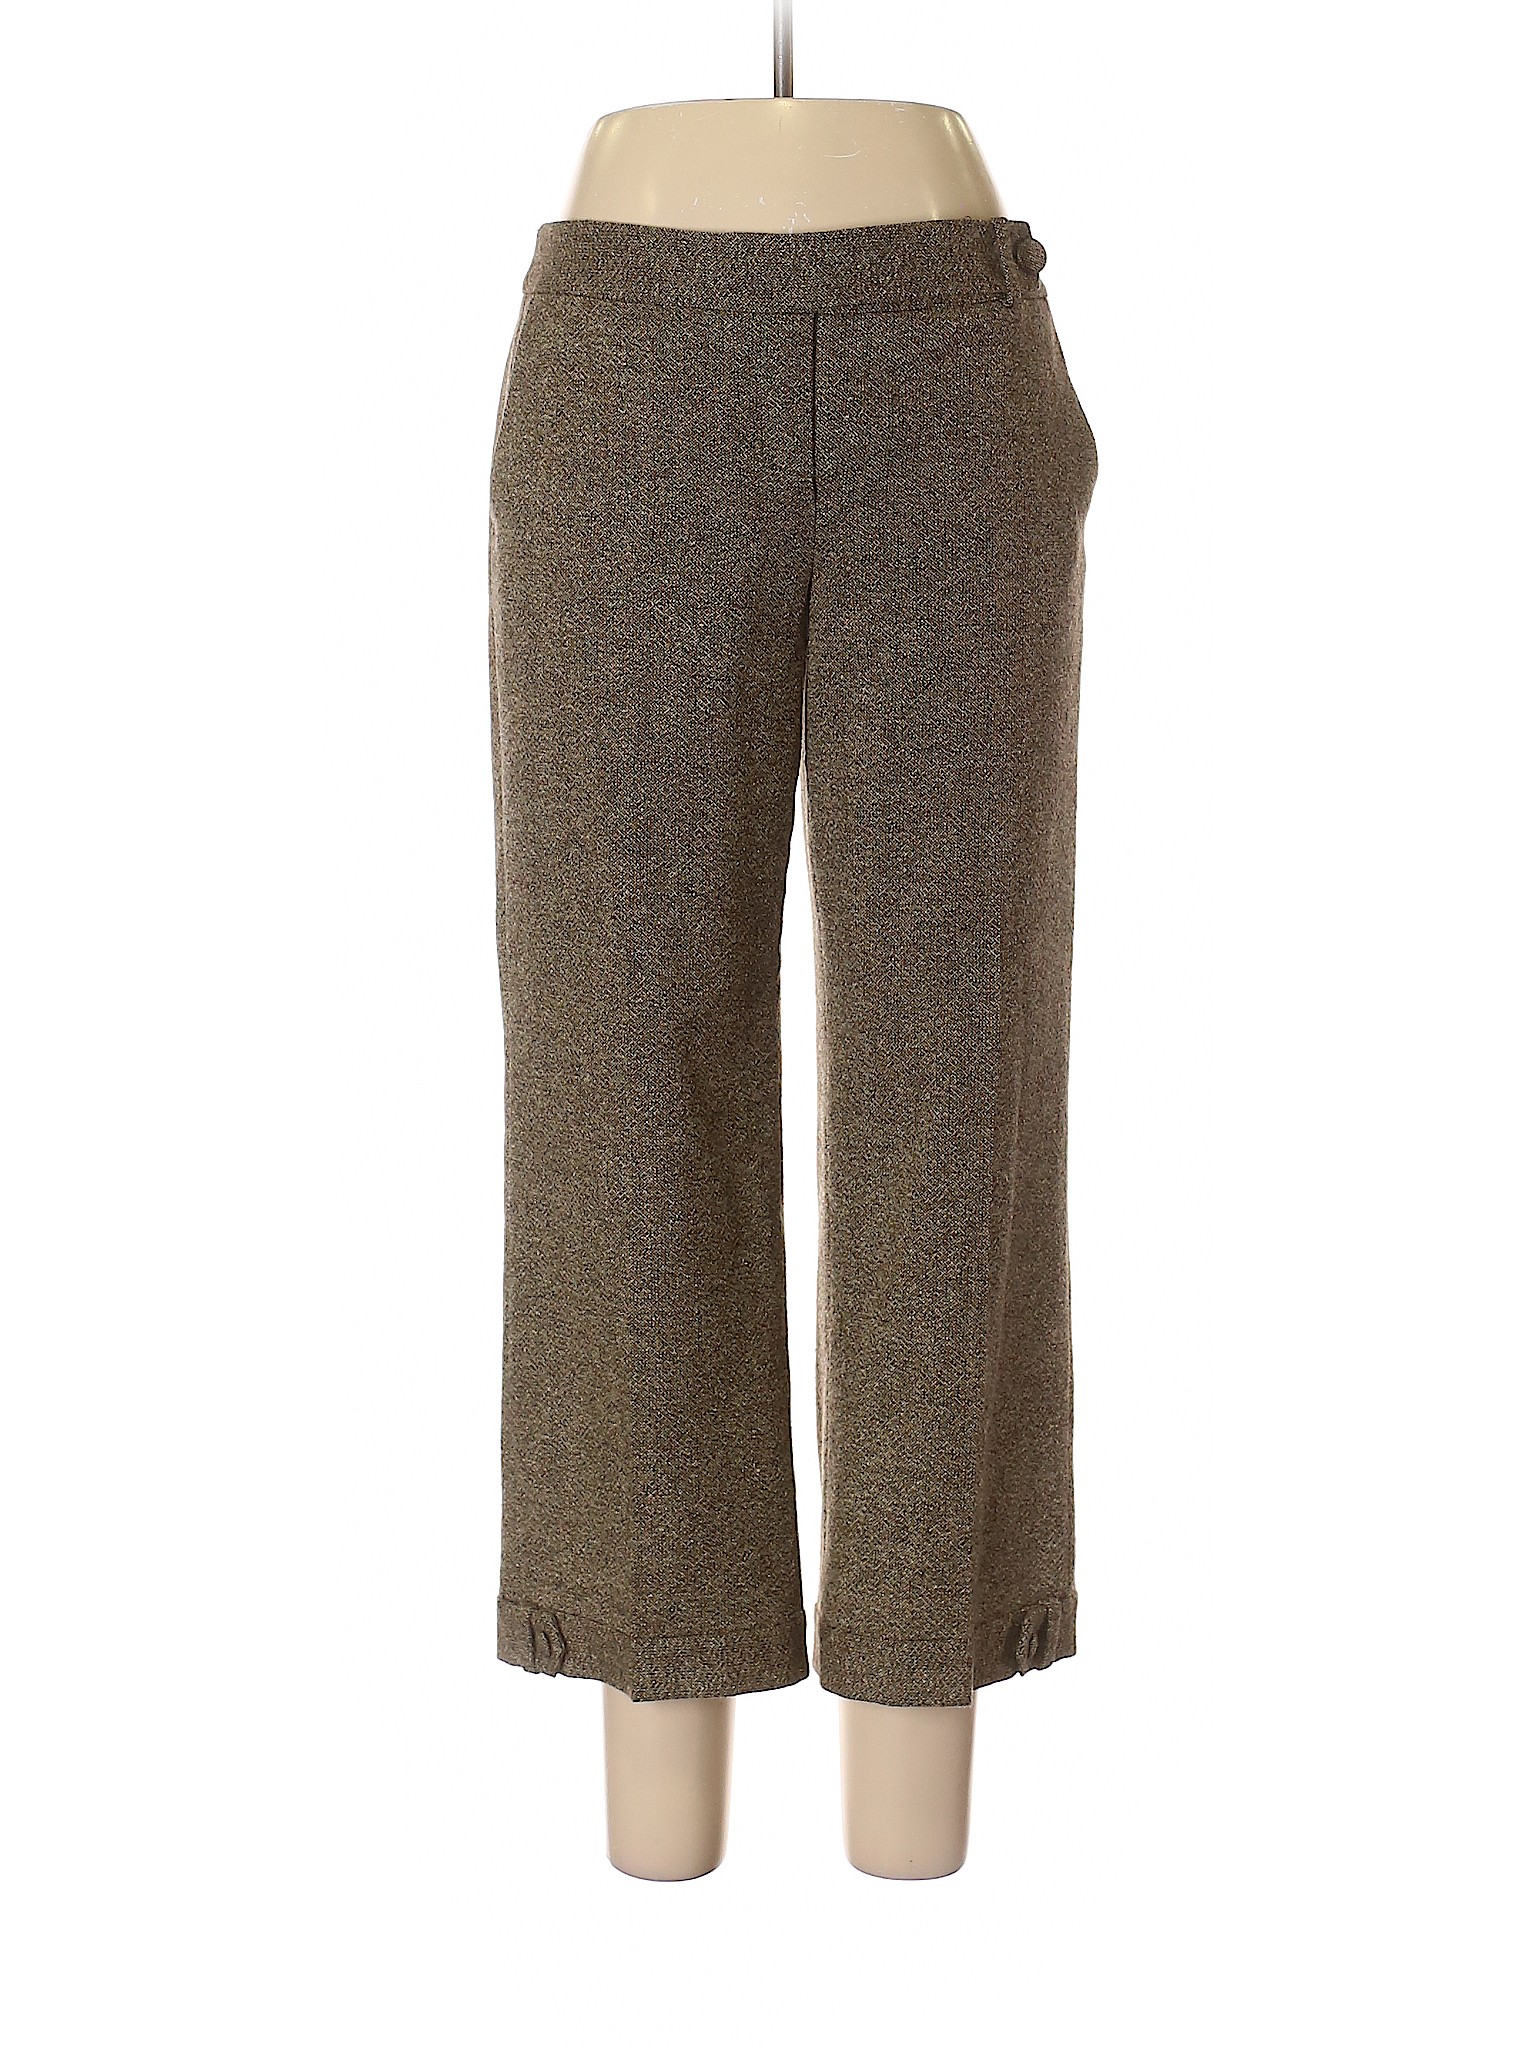 Ann Taylor Women Brown Wool Pants 8 | eBay